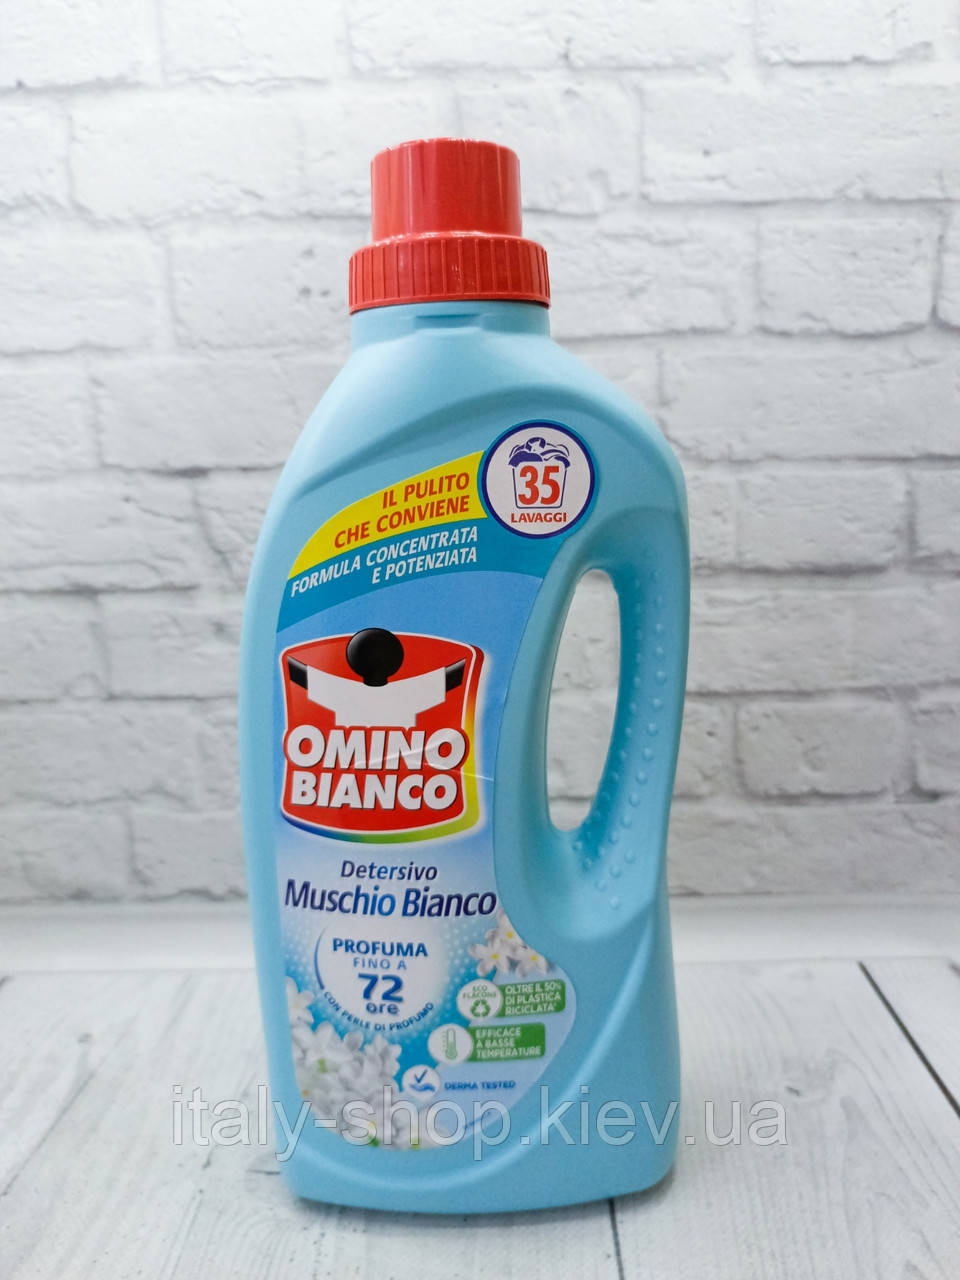 Концентрований гель для прання Omino Bianco Muschio Bianco 1400 мл, 35 прань, Італія